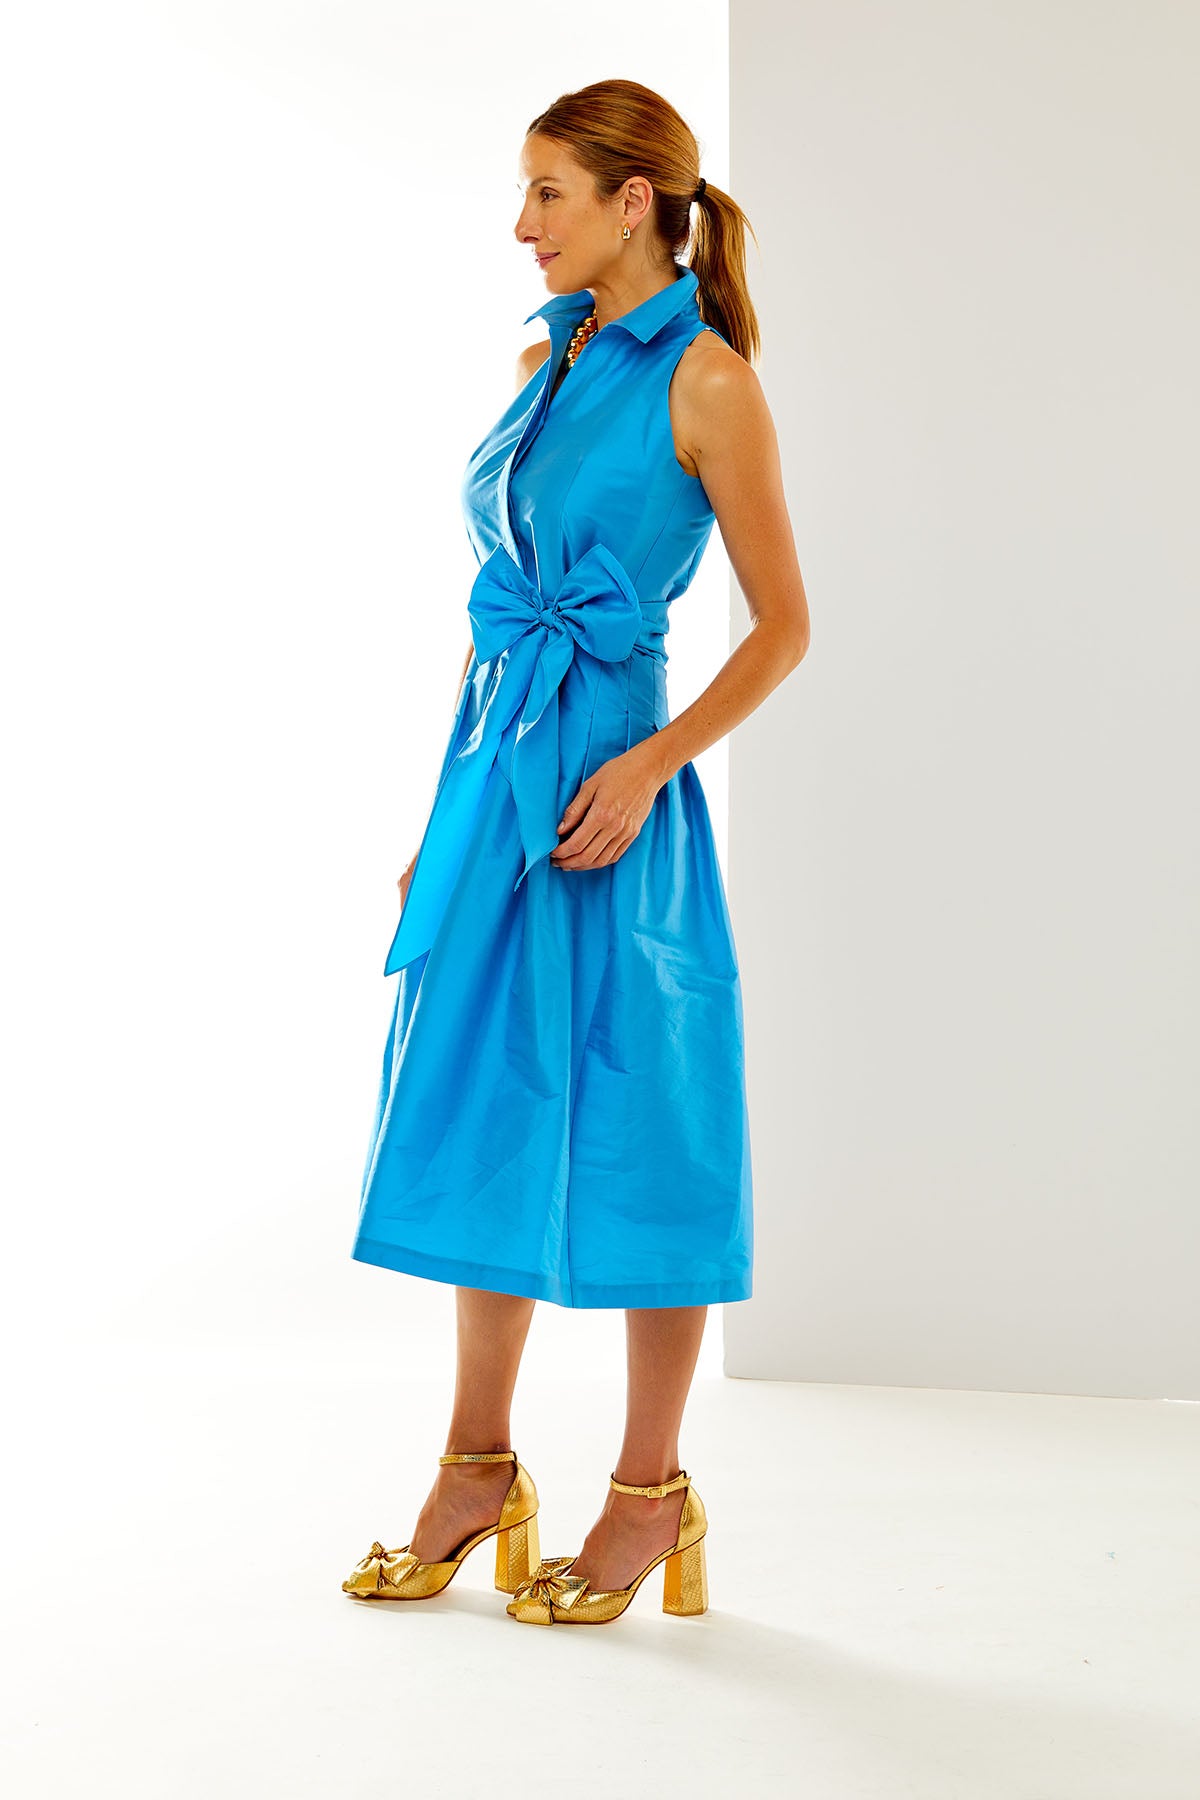 Woman in blue dress 